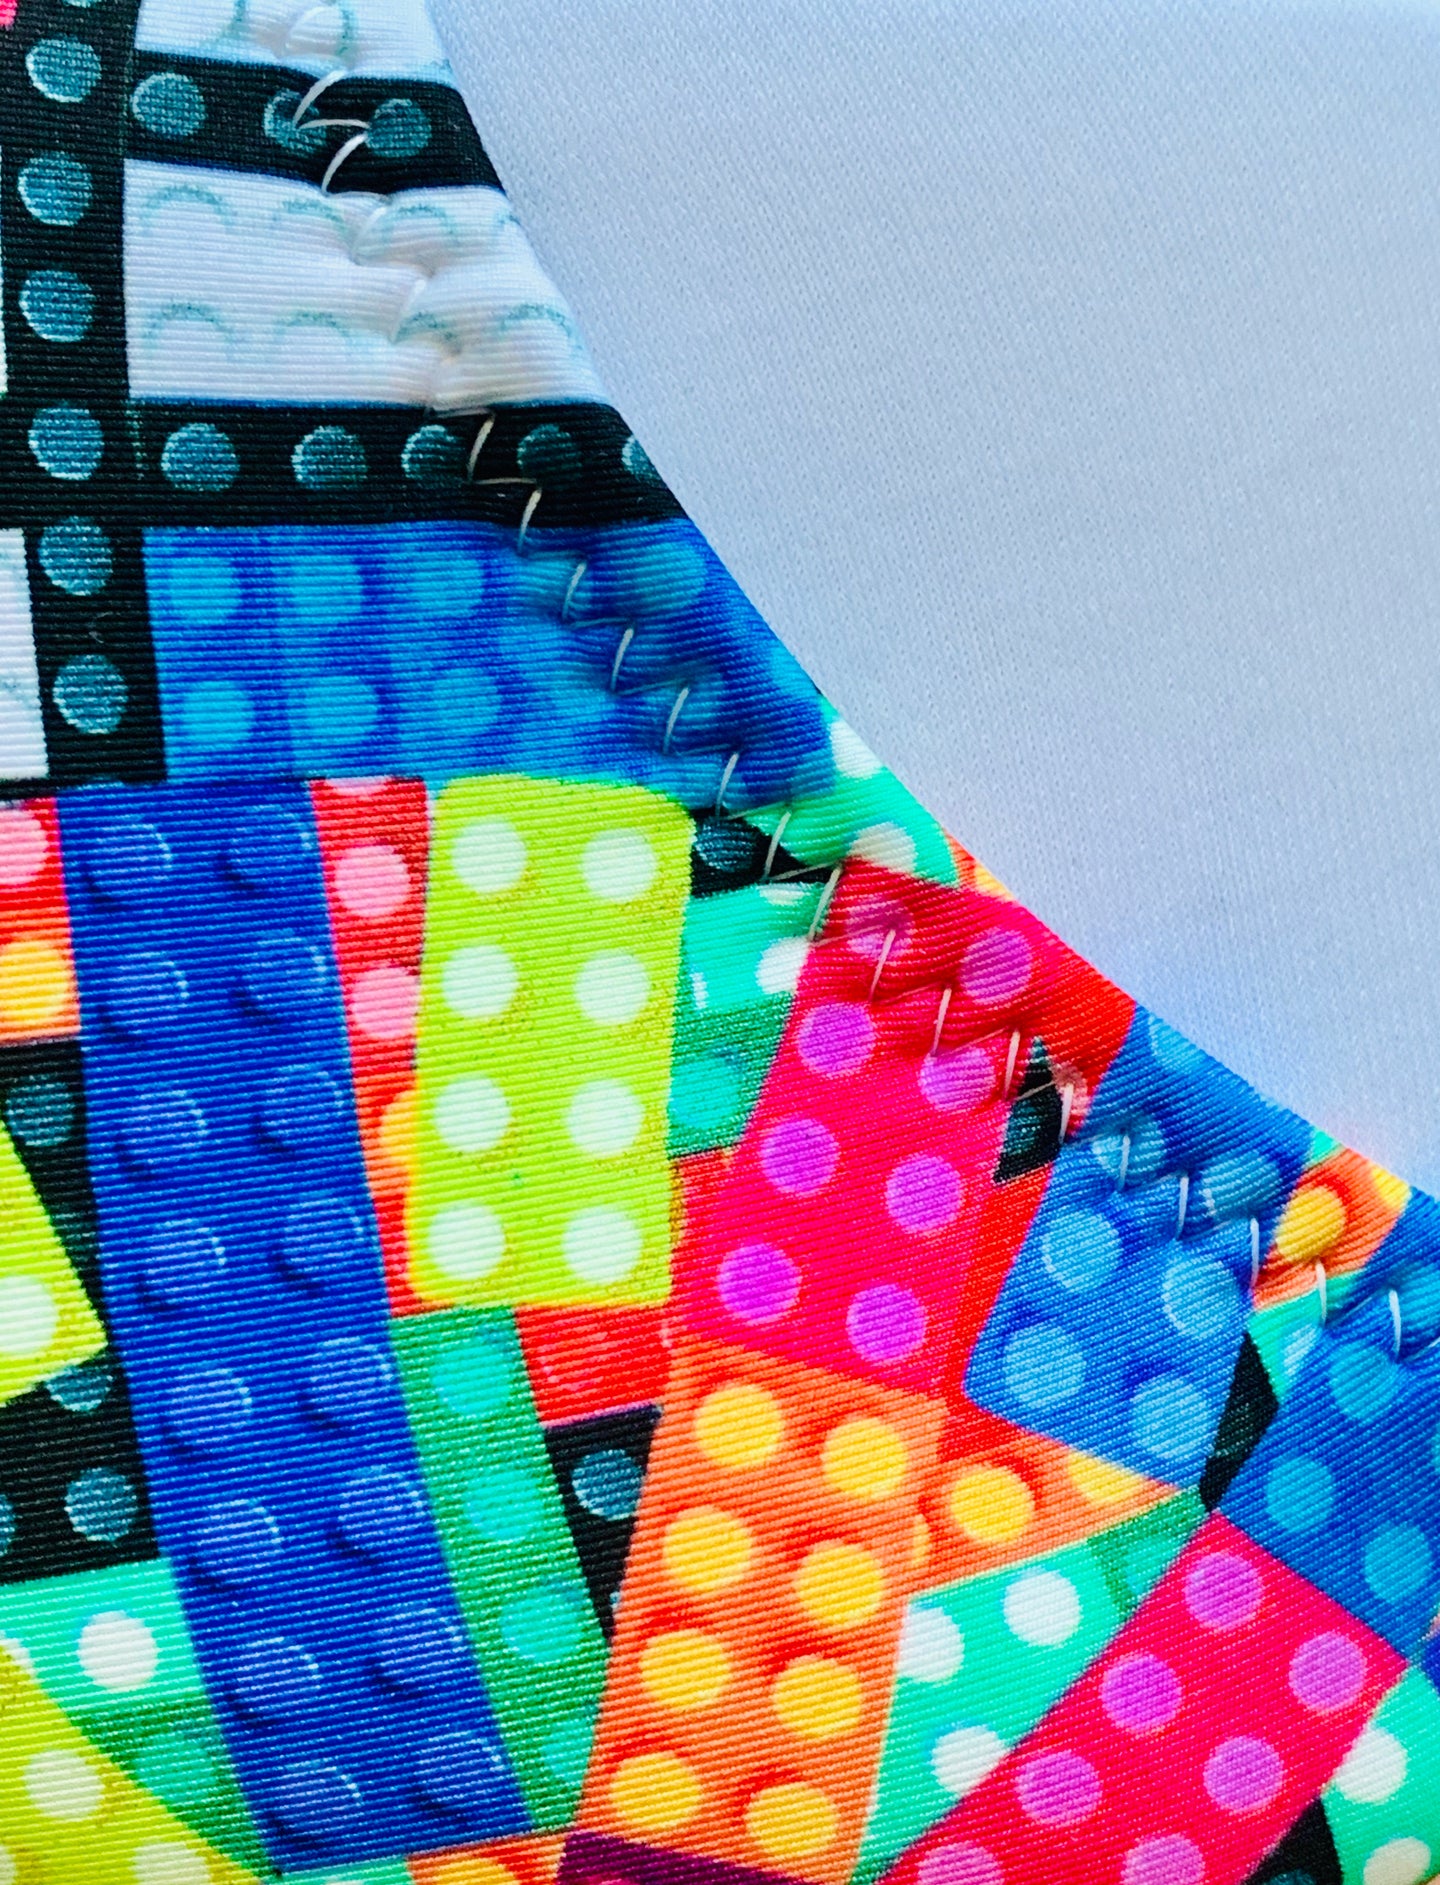 Legos Colorful One piece - BESITOS DE COCO